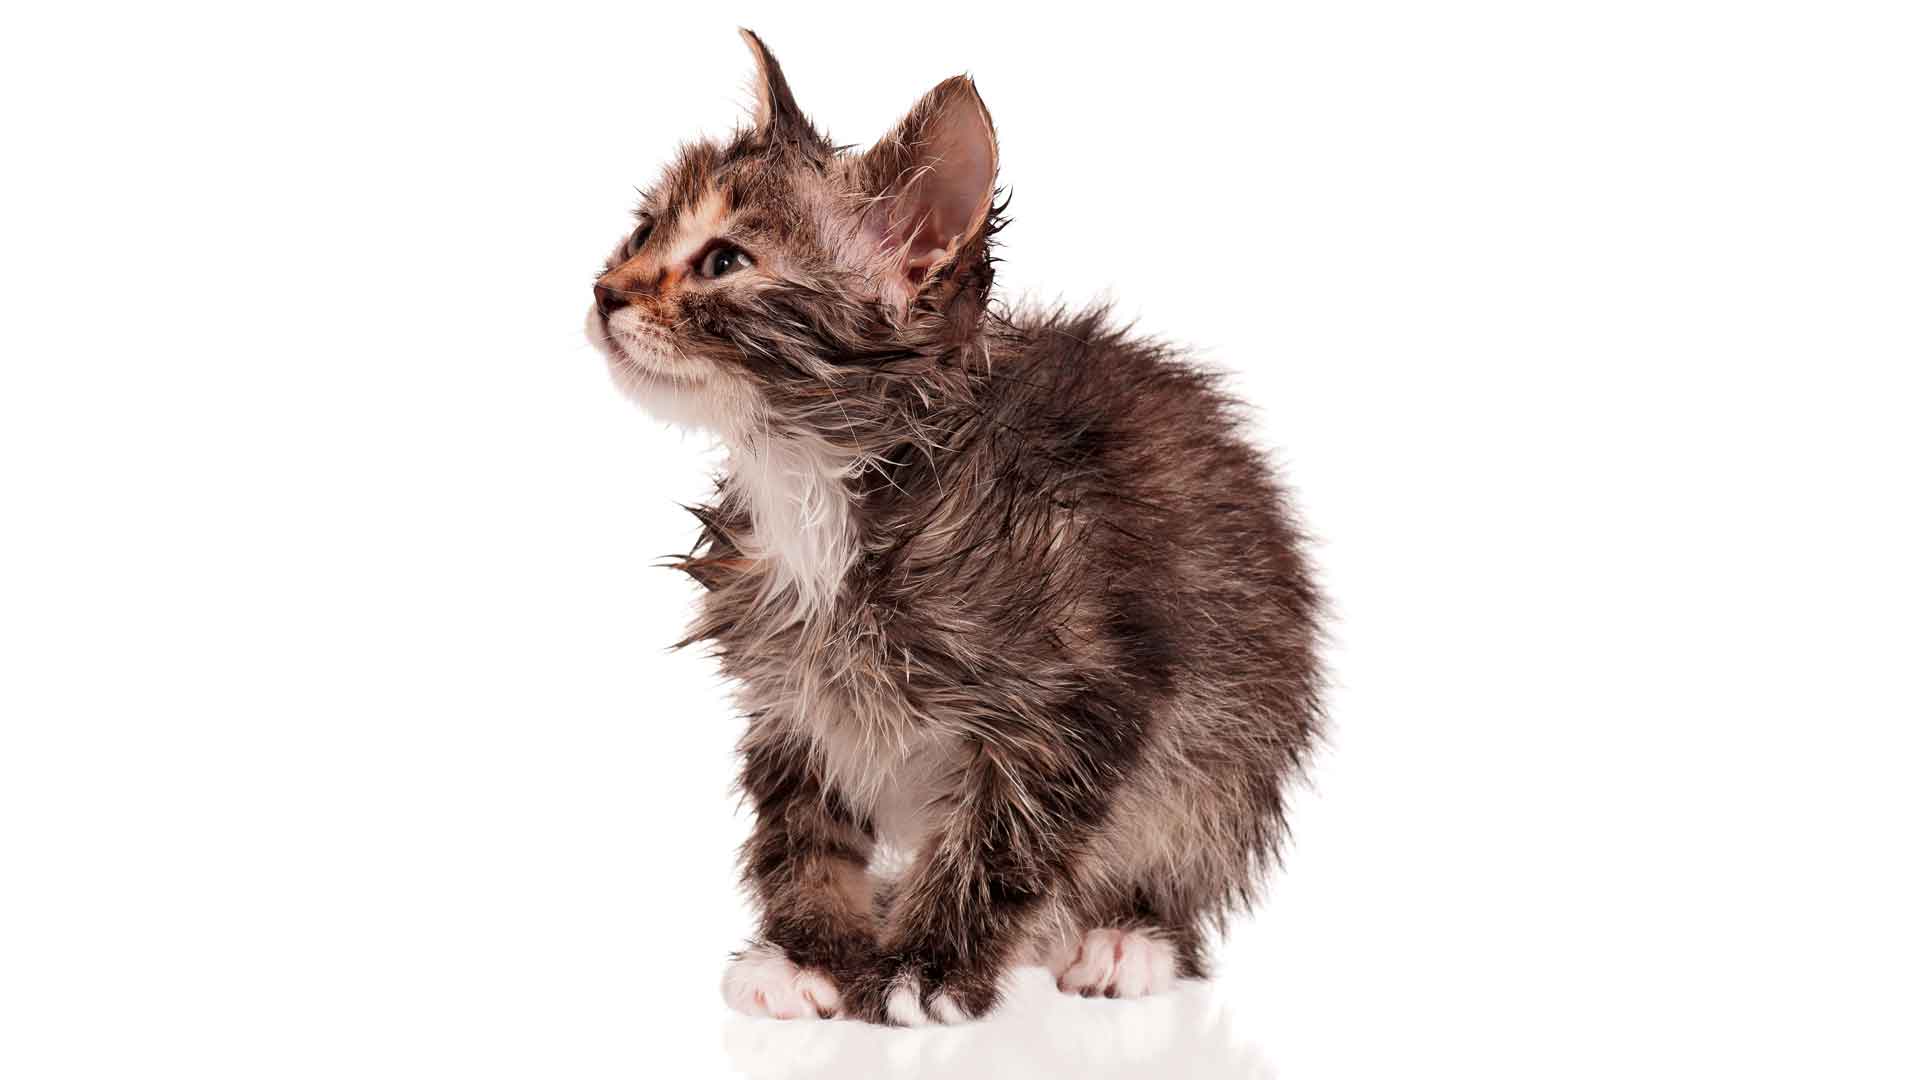 Allergi katte - reaktioner, symptomer behandling